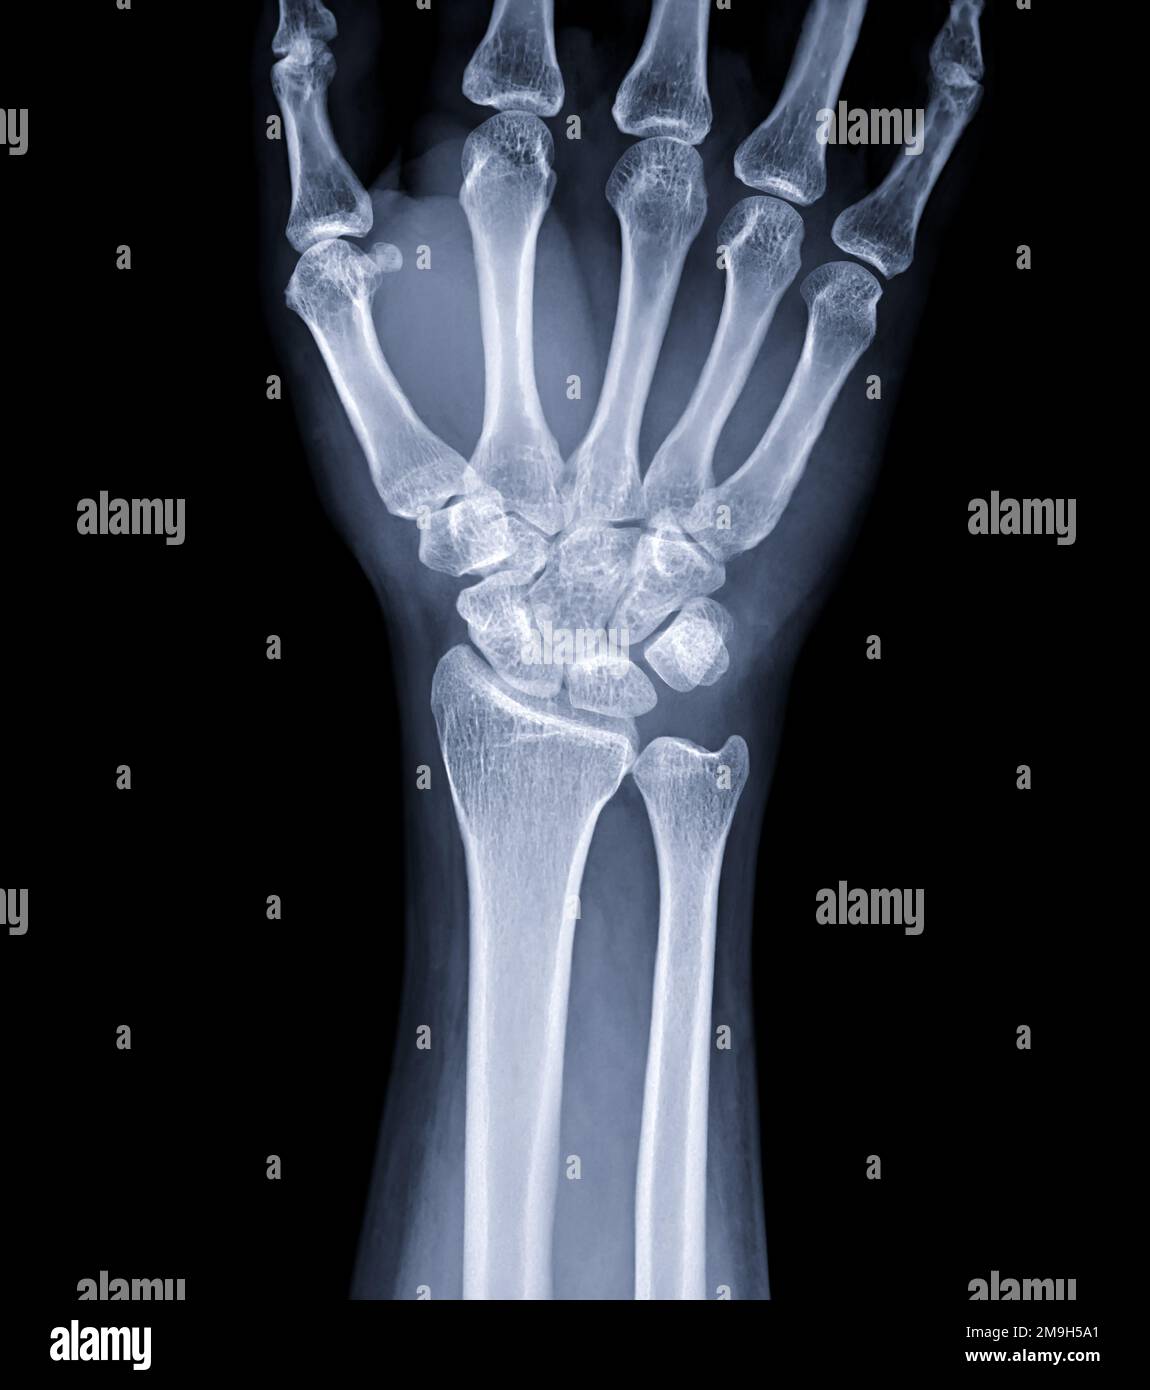 Immagine radiografica dell'articolazione del polso per la diagnosi dell'artrite reumatoide . Foto Stock